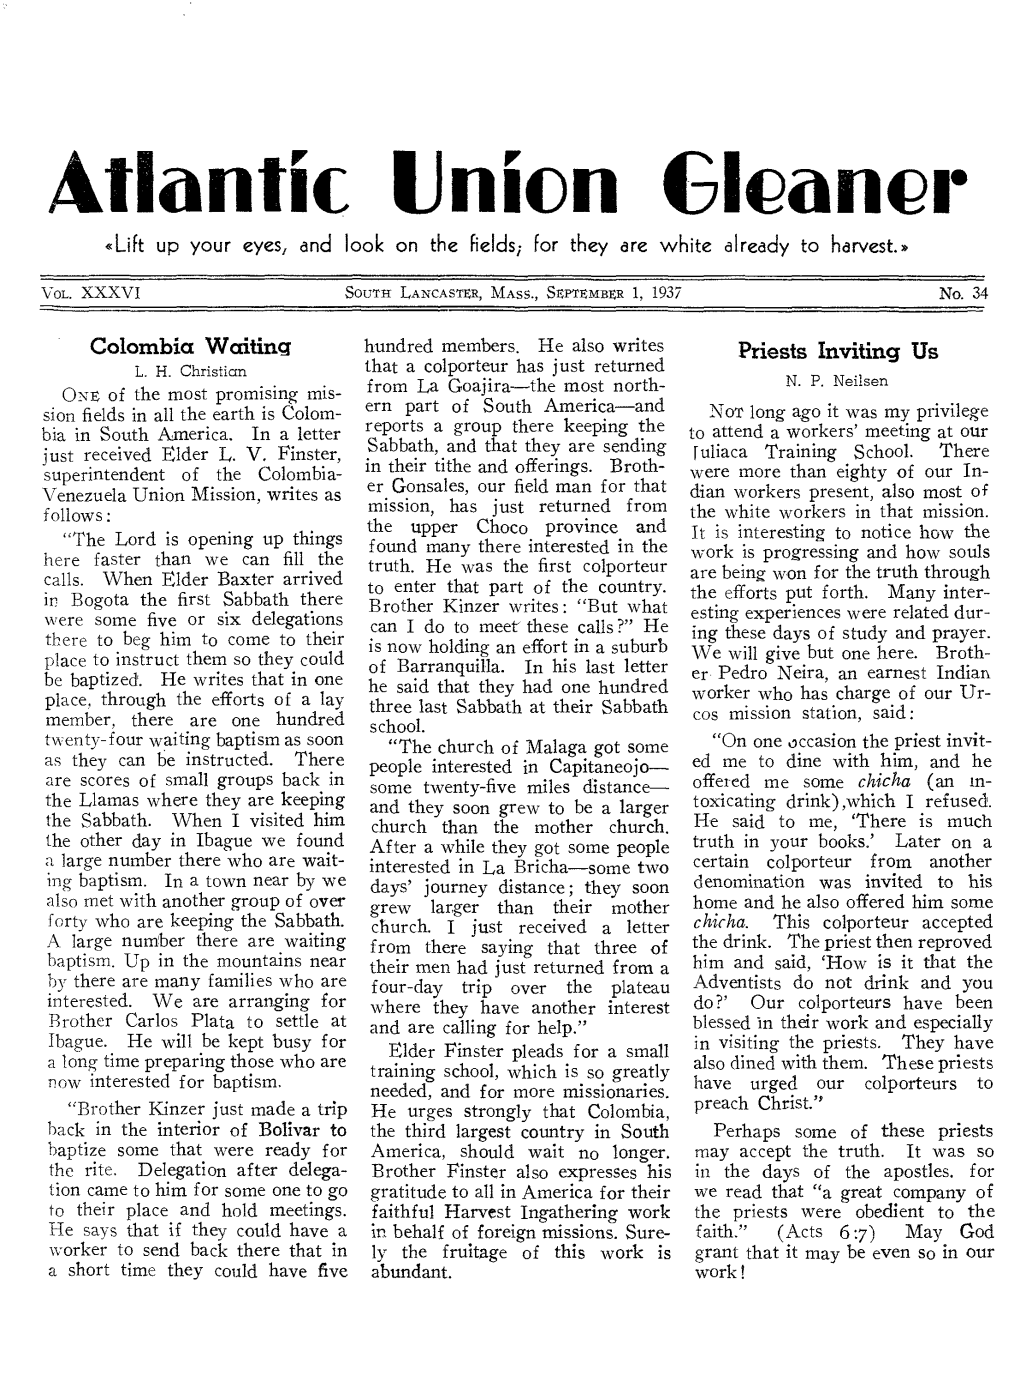 Atlantic Union Gleaner for 1937